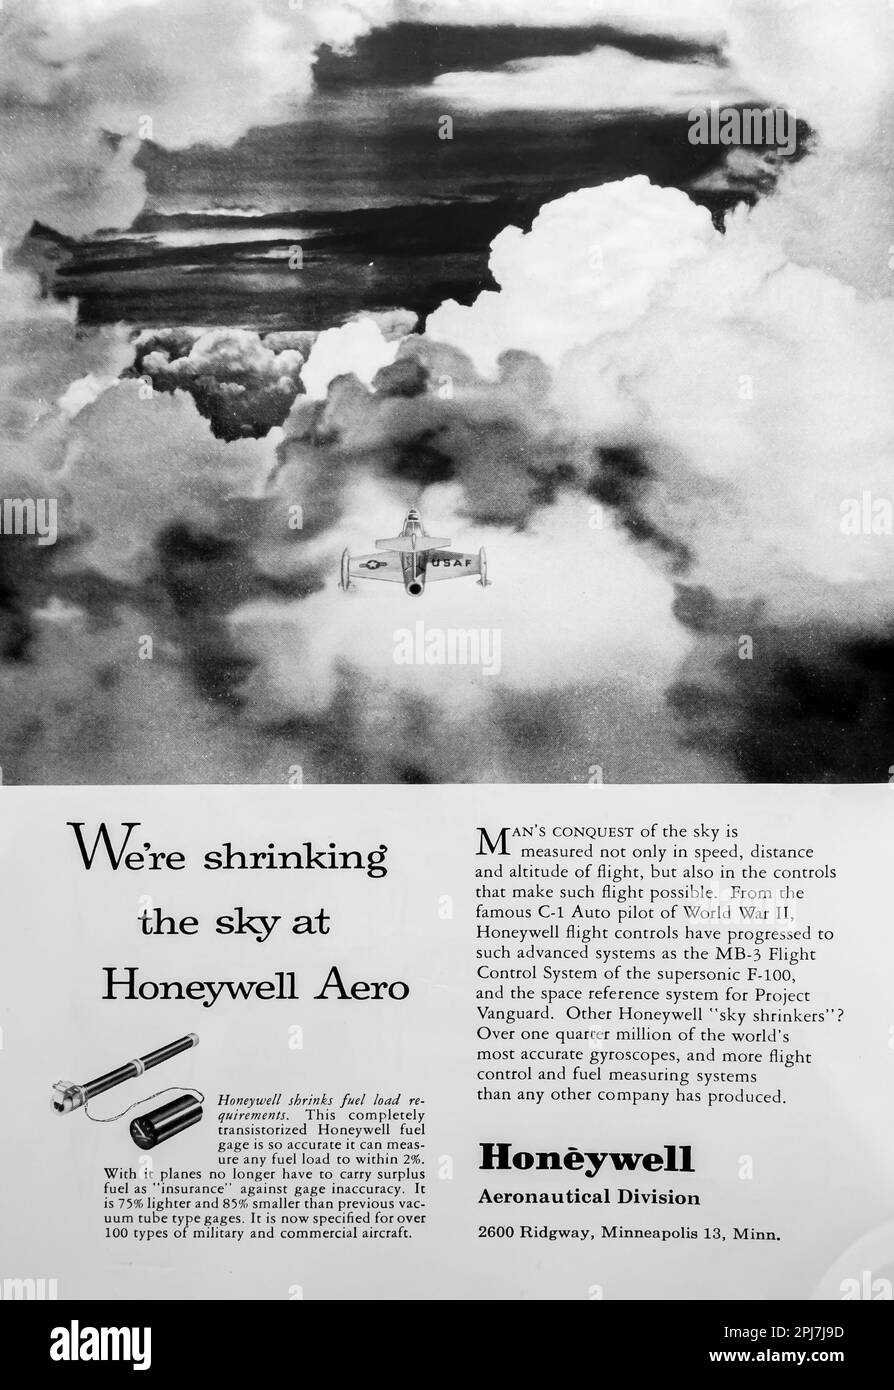 Honeywell Aero Aeronautical – Transistorized Fuel Gauge – Meßgeräte Werbeanzeige in einer Zeitschrift NatGeo, Mai 1957 Stockfoto